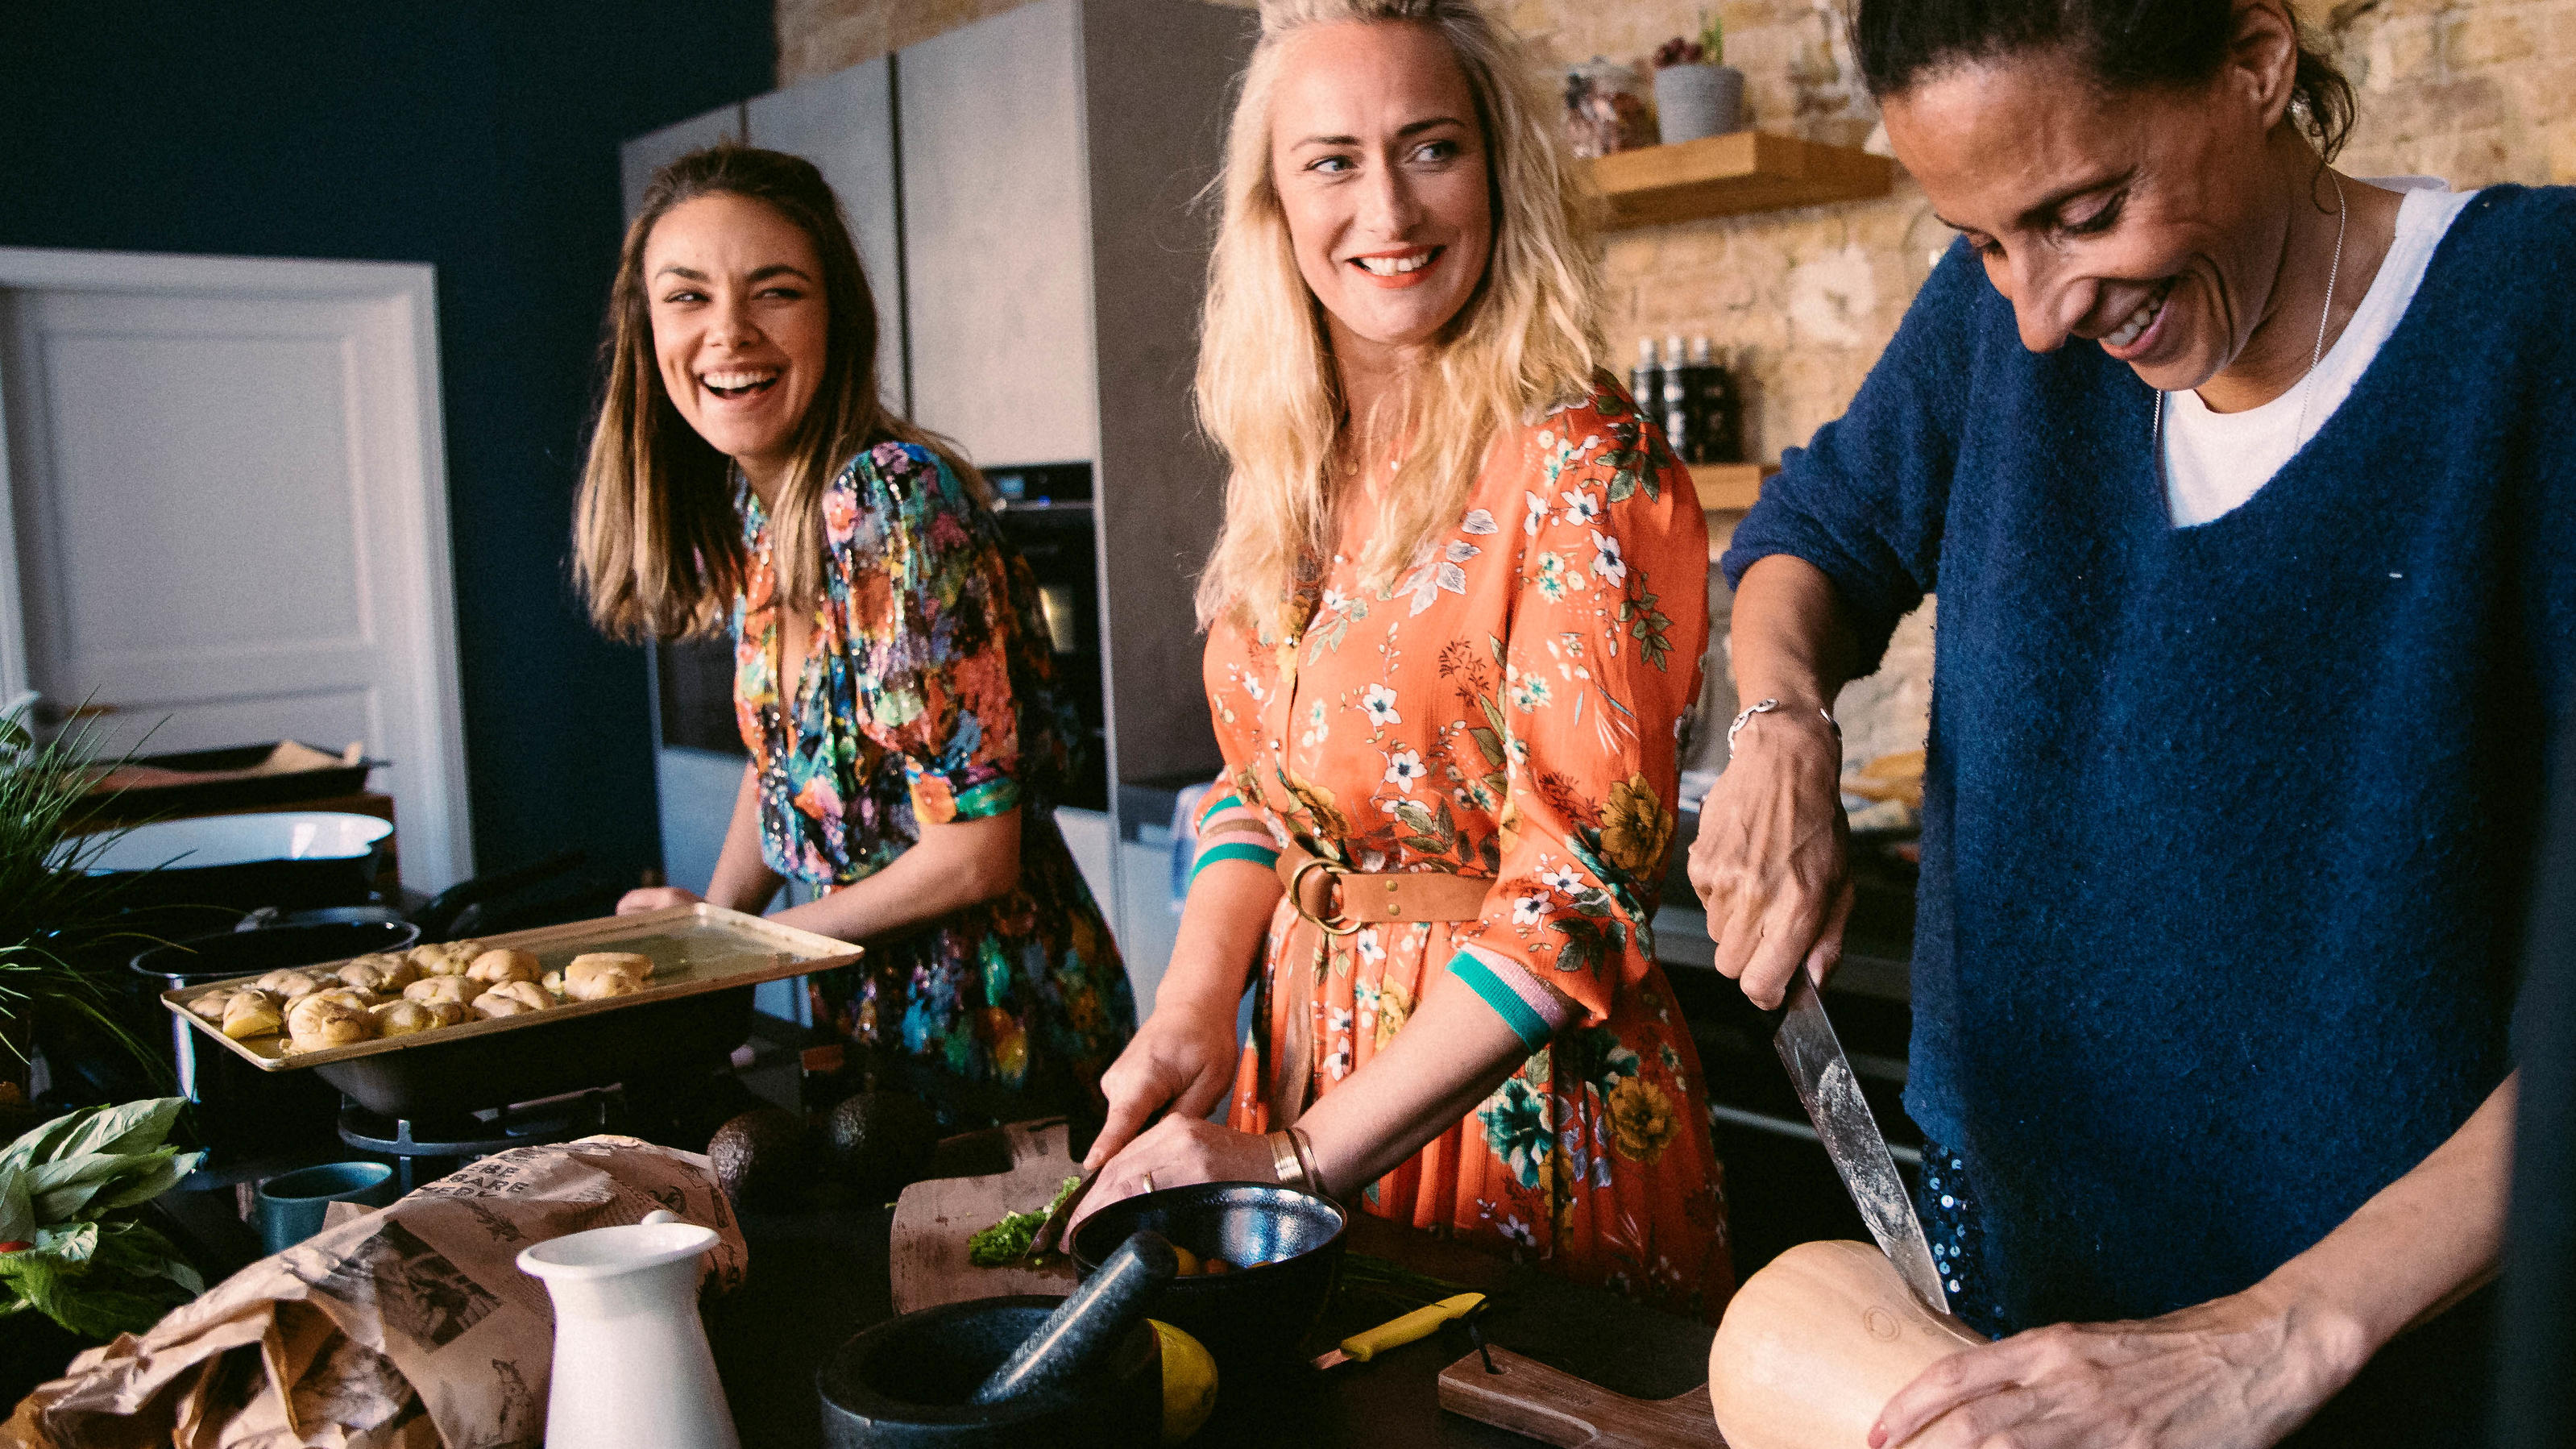 Das Motto von Janina Uhses "Glücklichküche": Kochen verbindet.